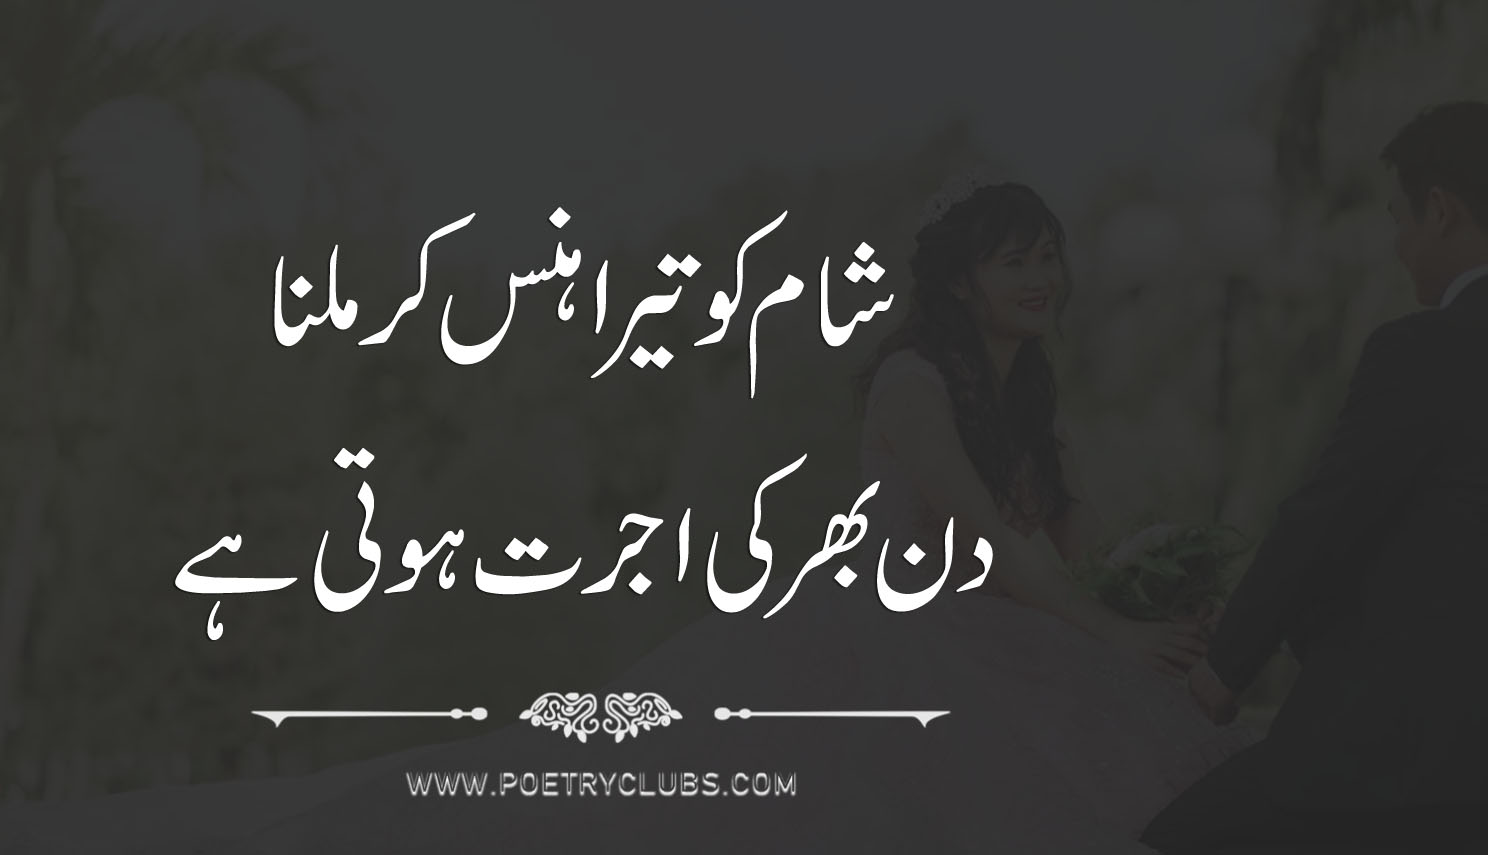 Urdu Quotes, Sad, Romantic, Love Poetry And Quotes - Aisam Ul Haq  Engagement - 1488x855 Wallpaper 